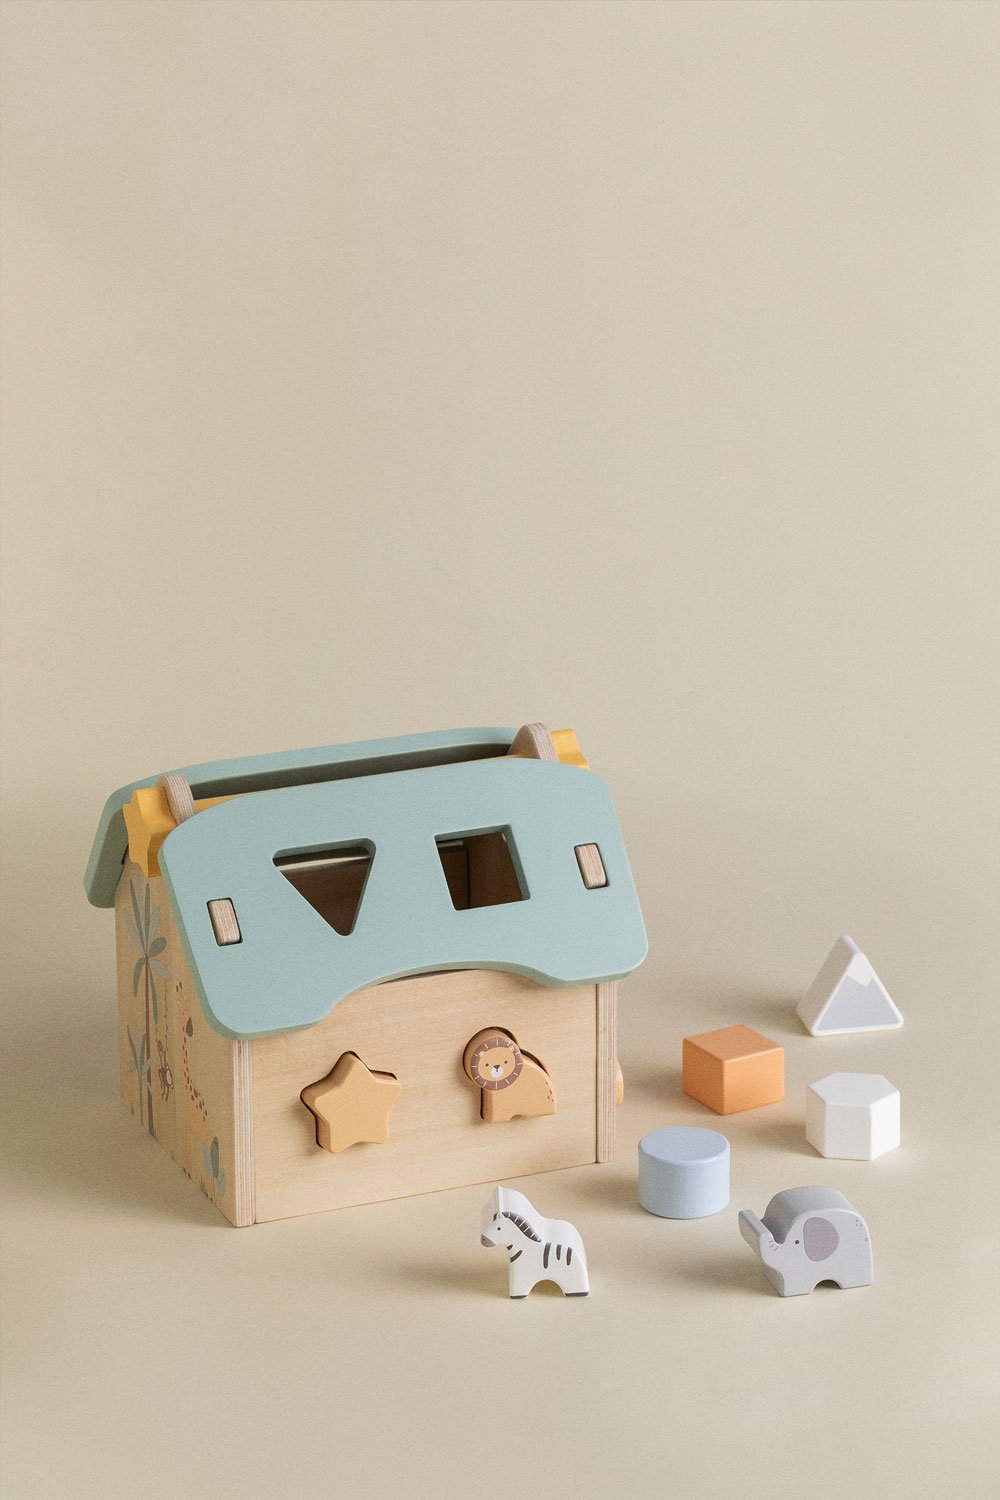 Grady Kids houten huis met in elkaar grijpende onderdelen, galerij beeld 1